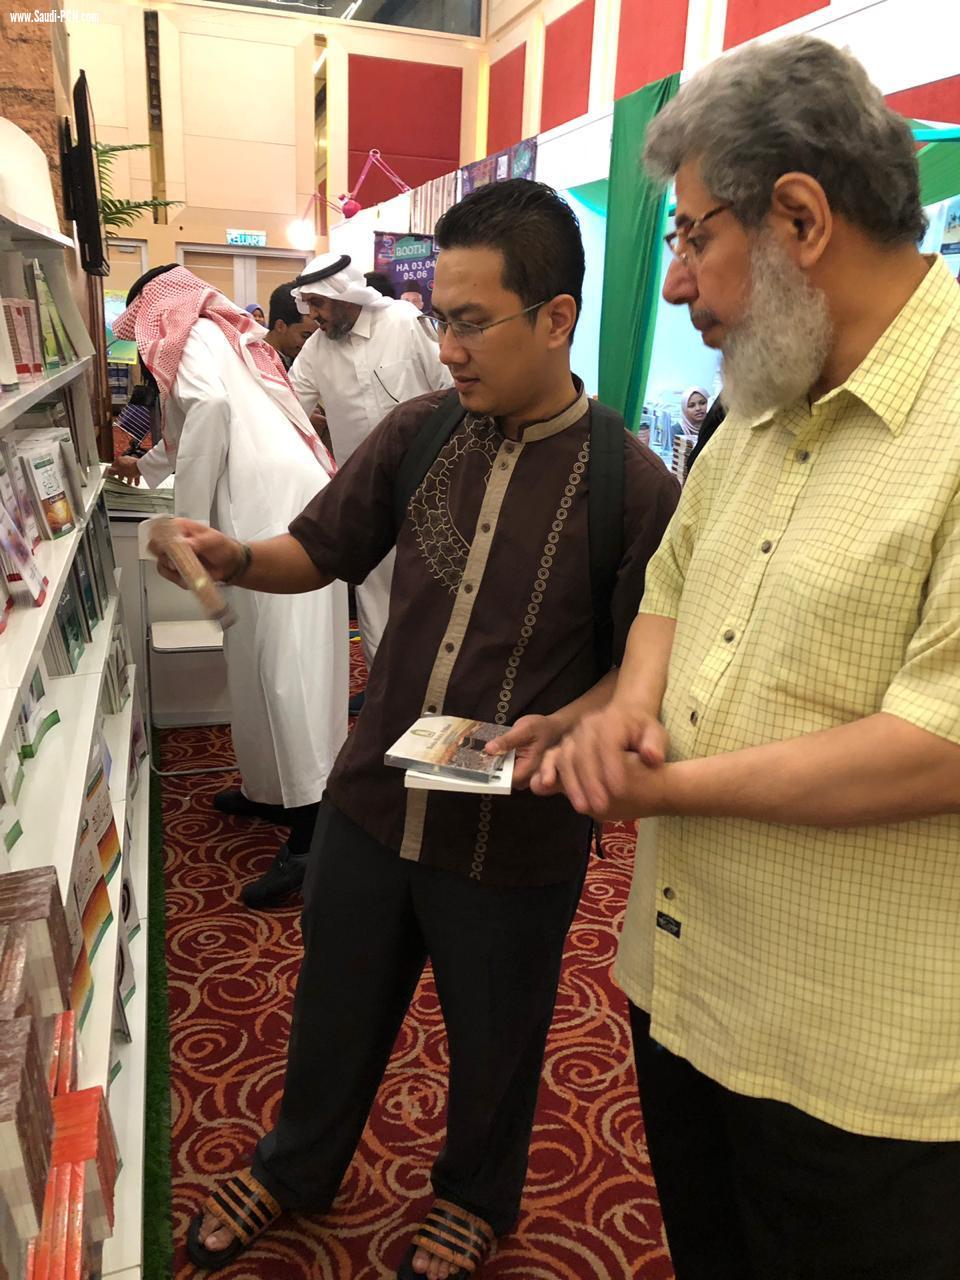 الشؤون الإسلامية تشارك في معرض كوالالمبور الدولي للكتاب 2019